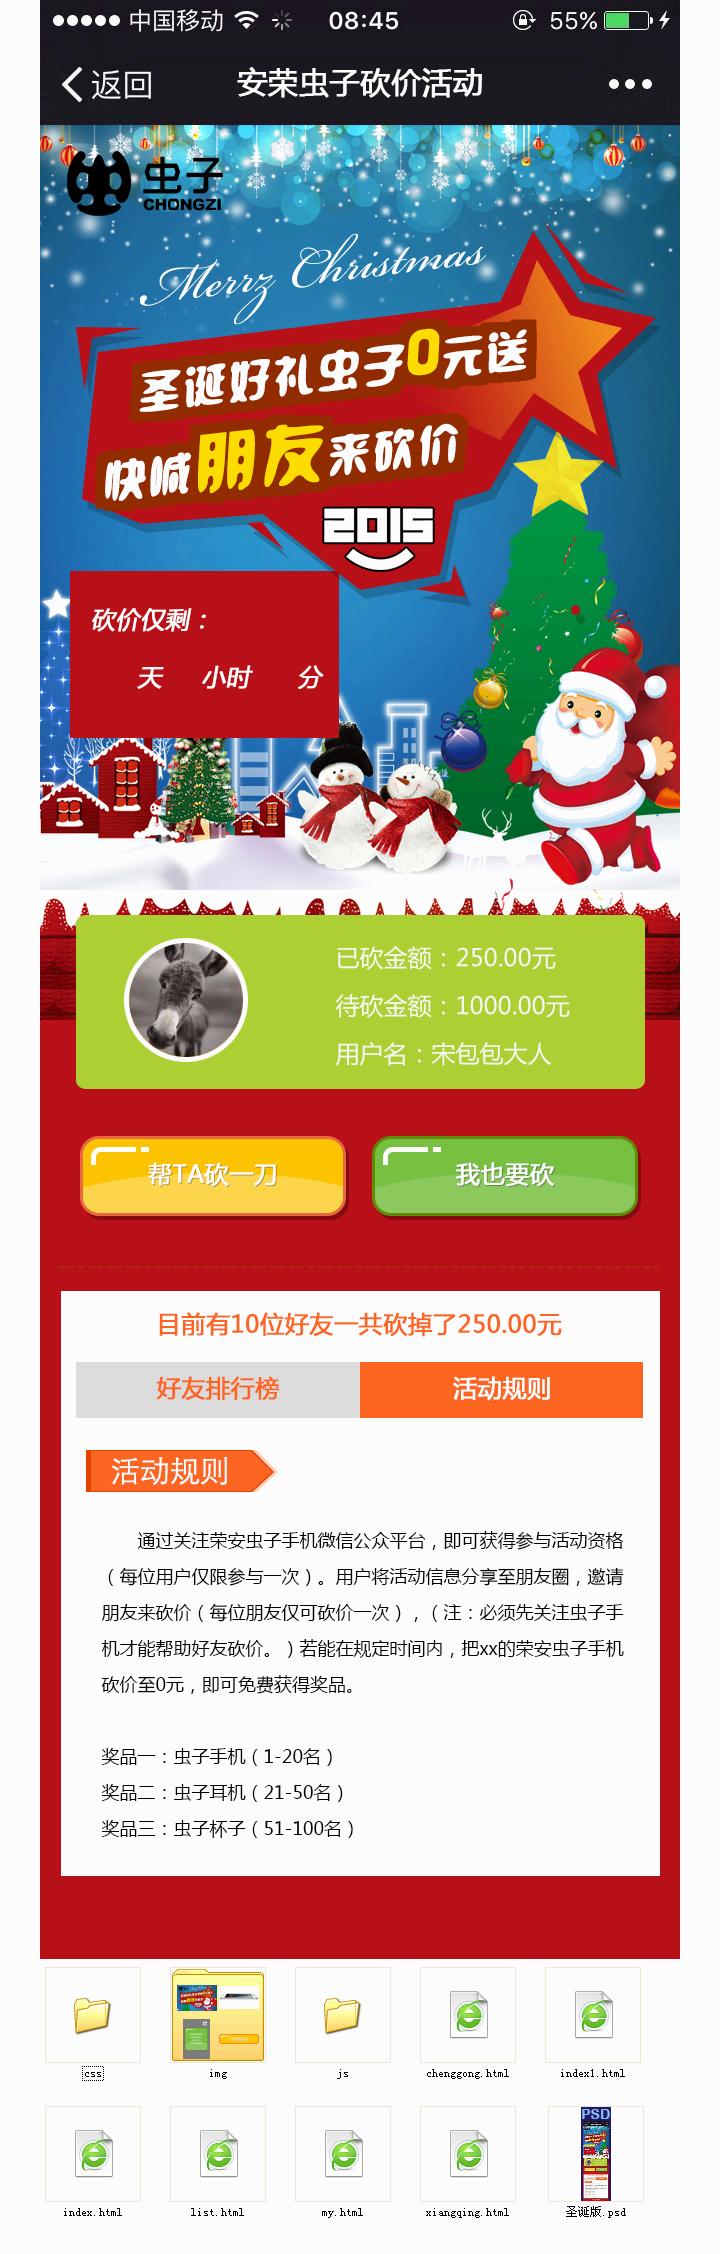 wap圣诞节手机砍价活动页面模板(图1)